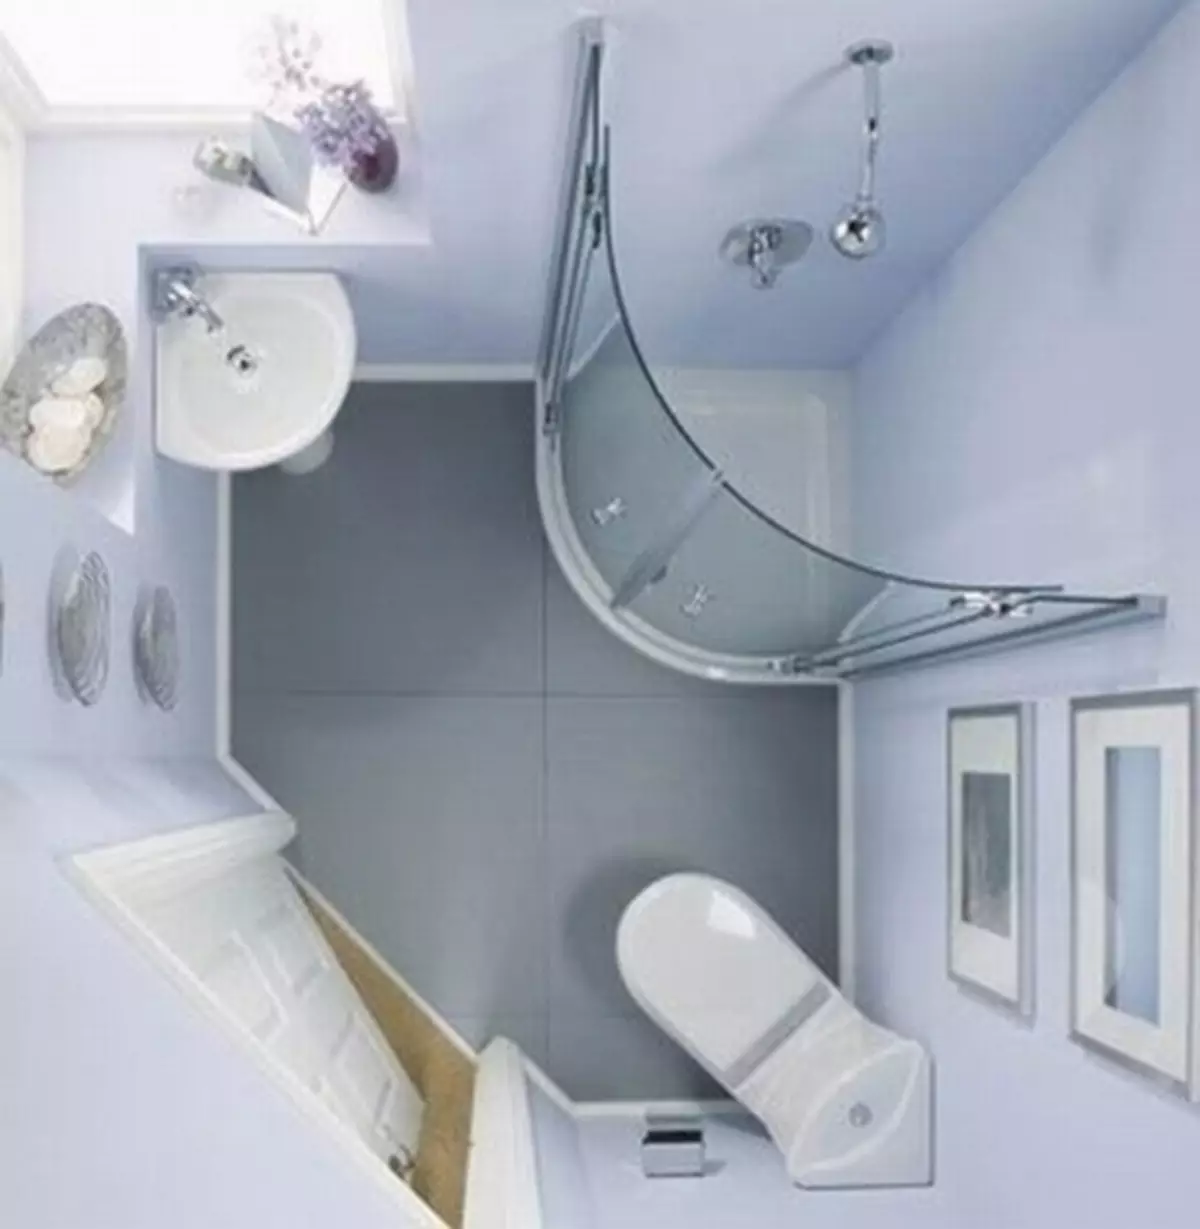 Угаалгын өрөө зохион байгуулалт - Сонголтууд ба шийдэл